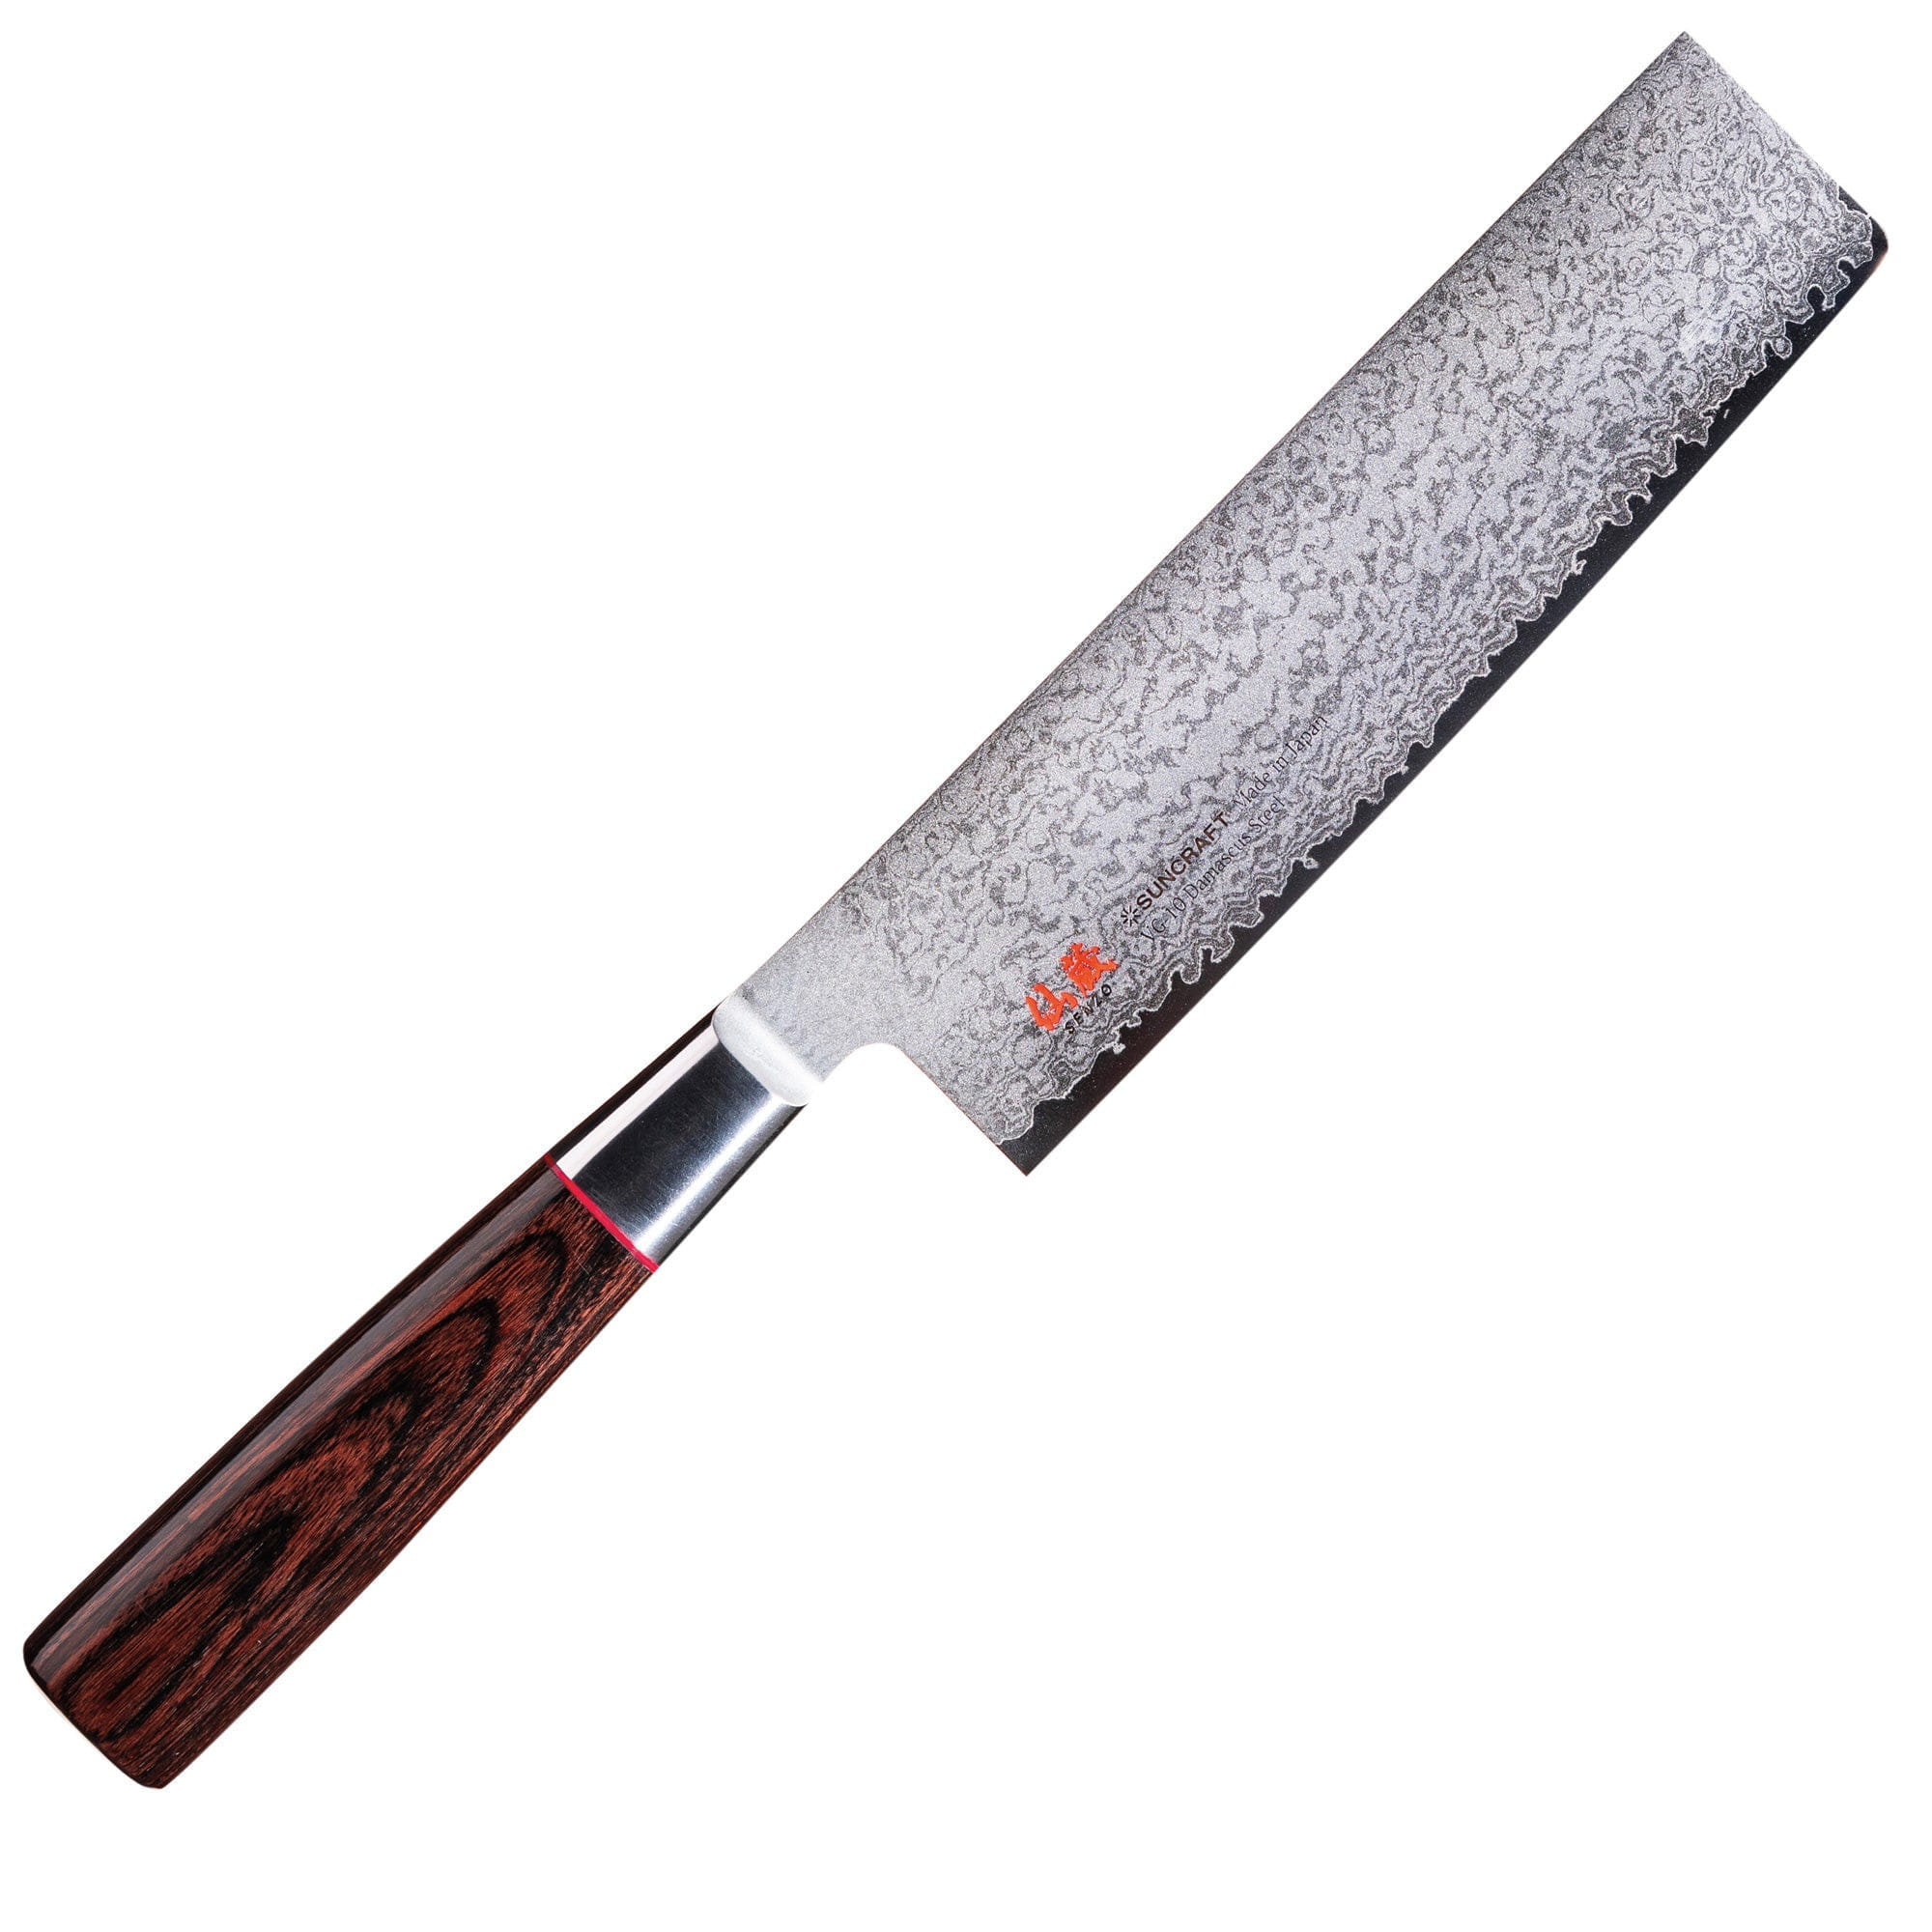 Senzo Classic Id 15 Nakiri Knife, 16.7 Cm